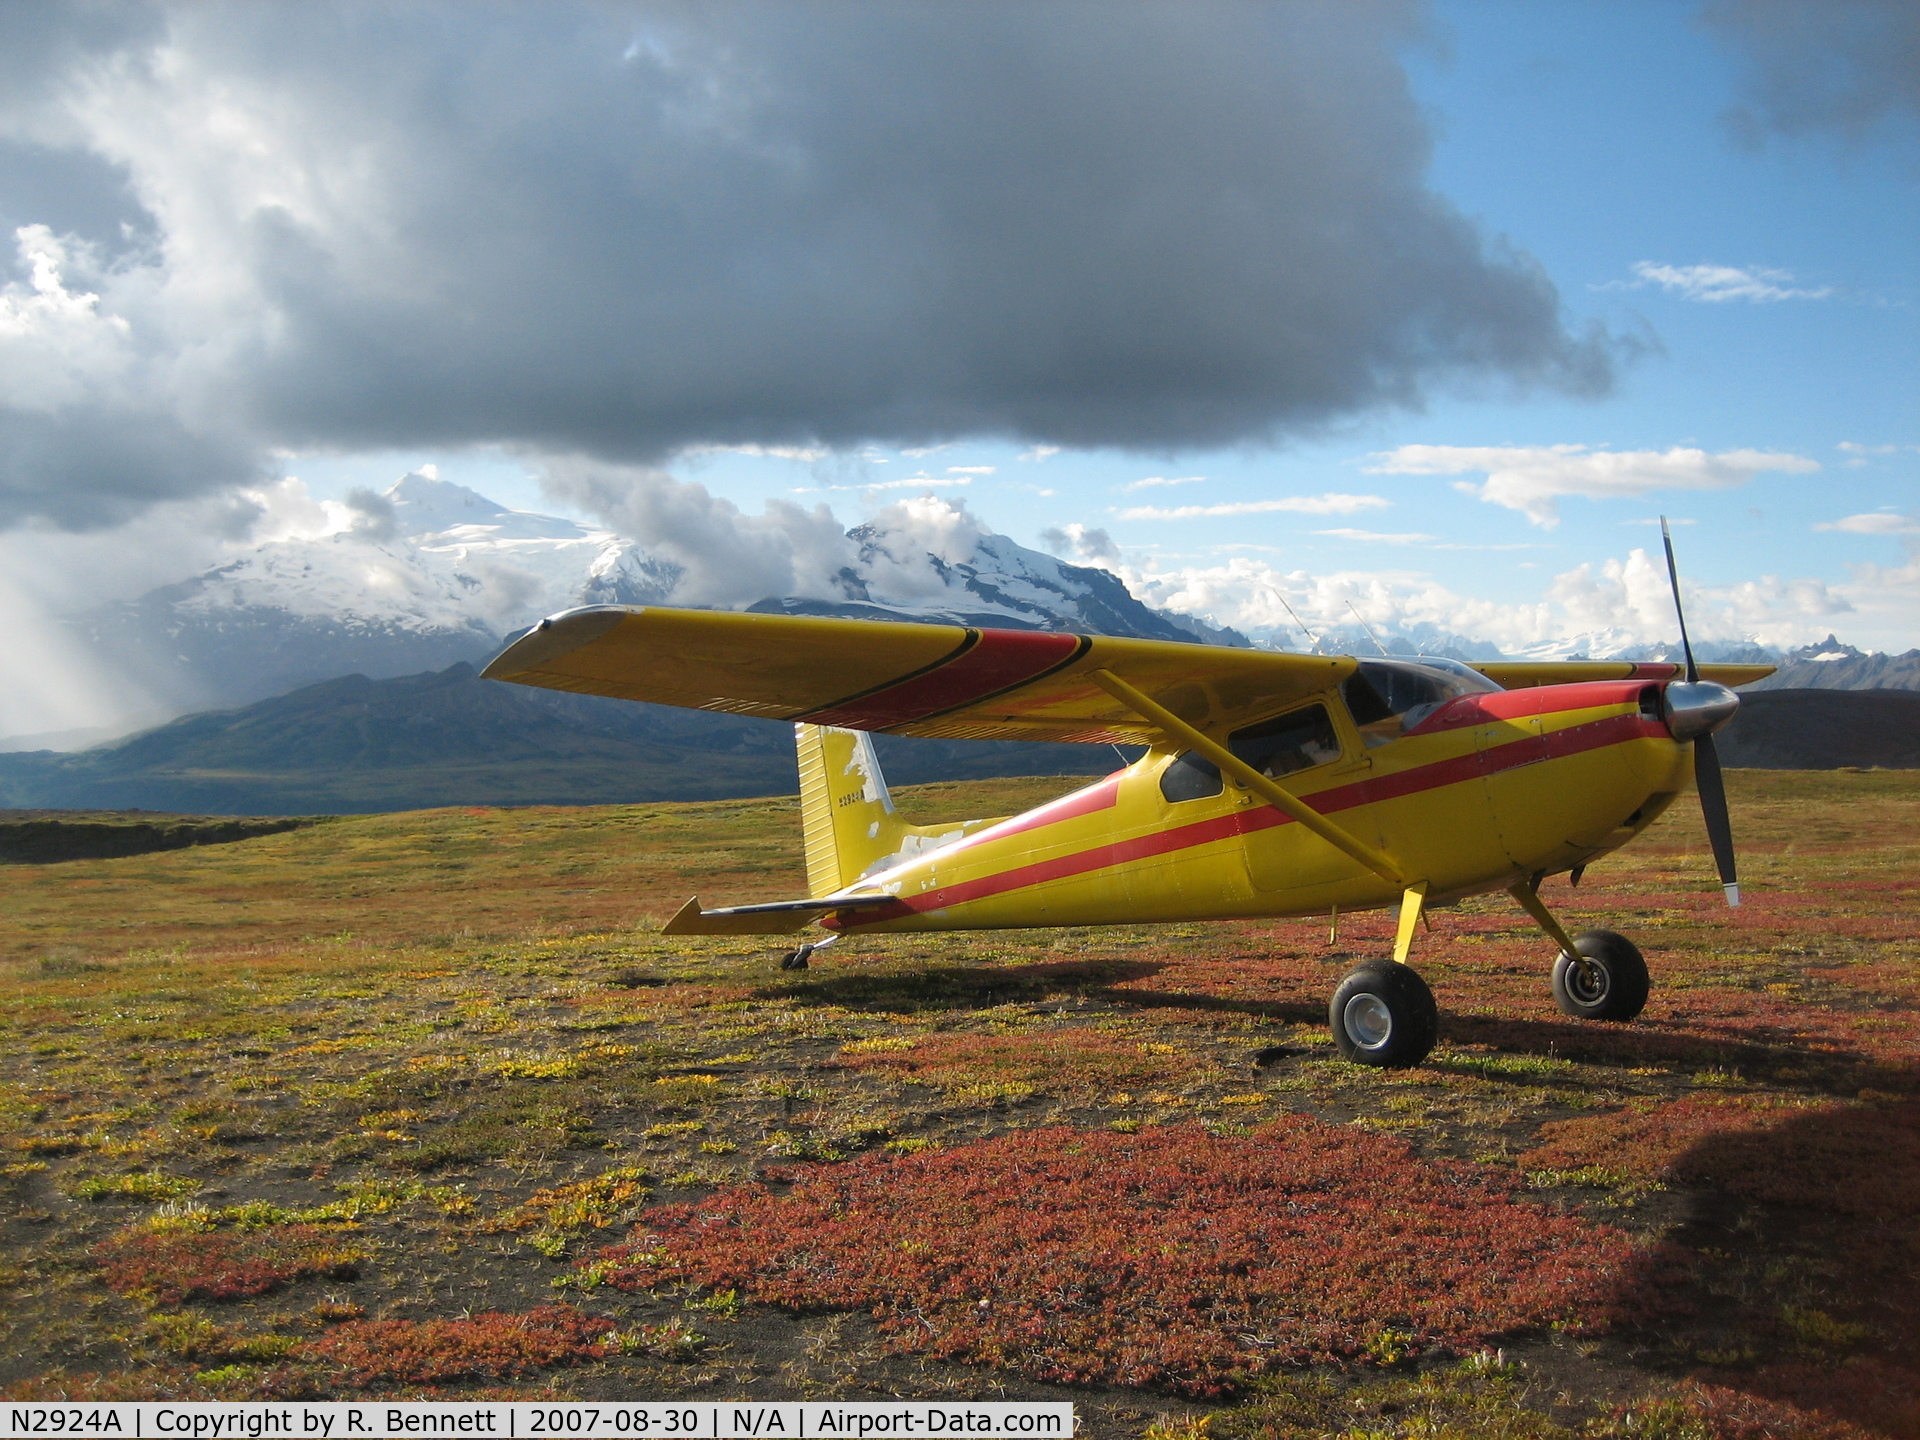 N2924A, 1953 Cessna 180 C/N 30124, Taken near Mt. Spurr in the Alaska Range